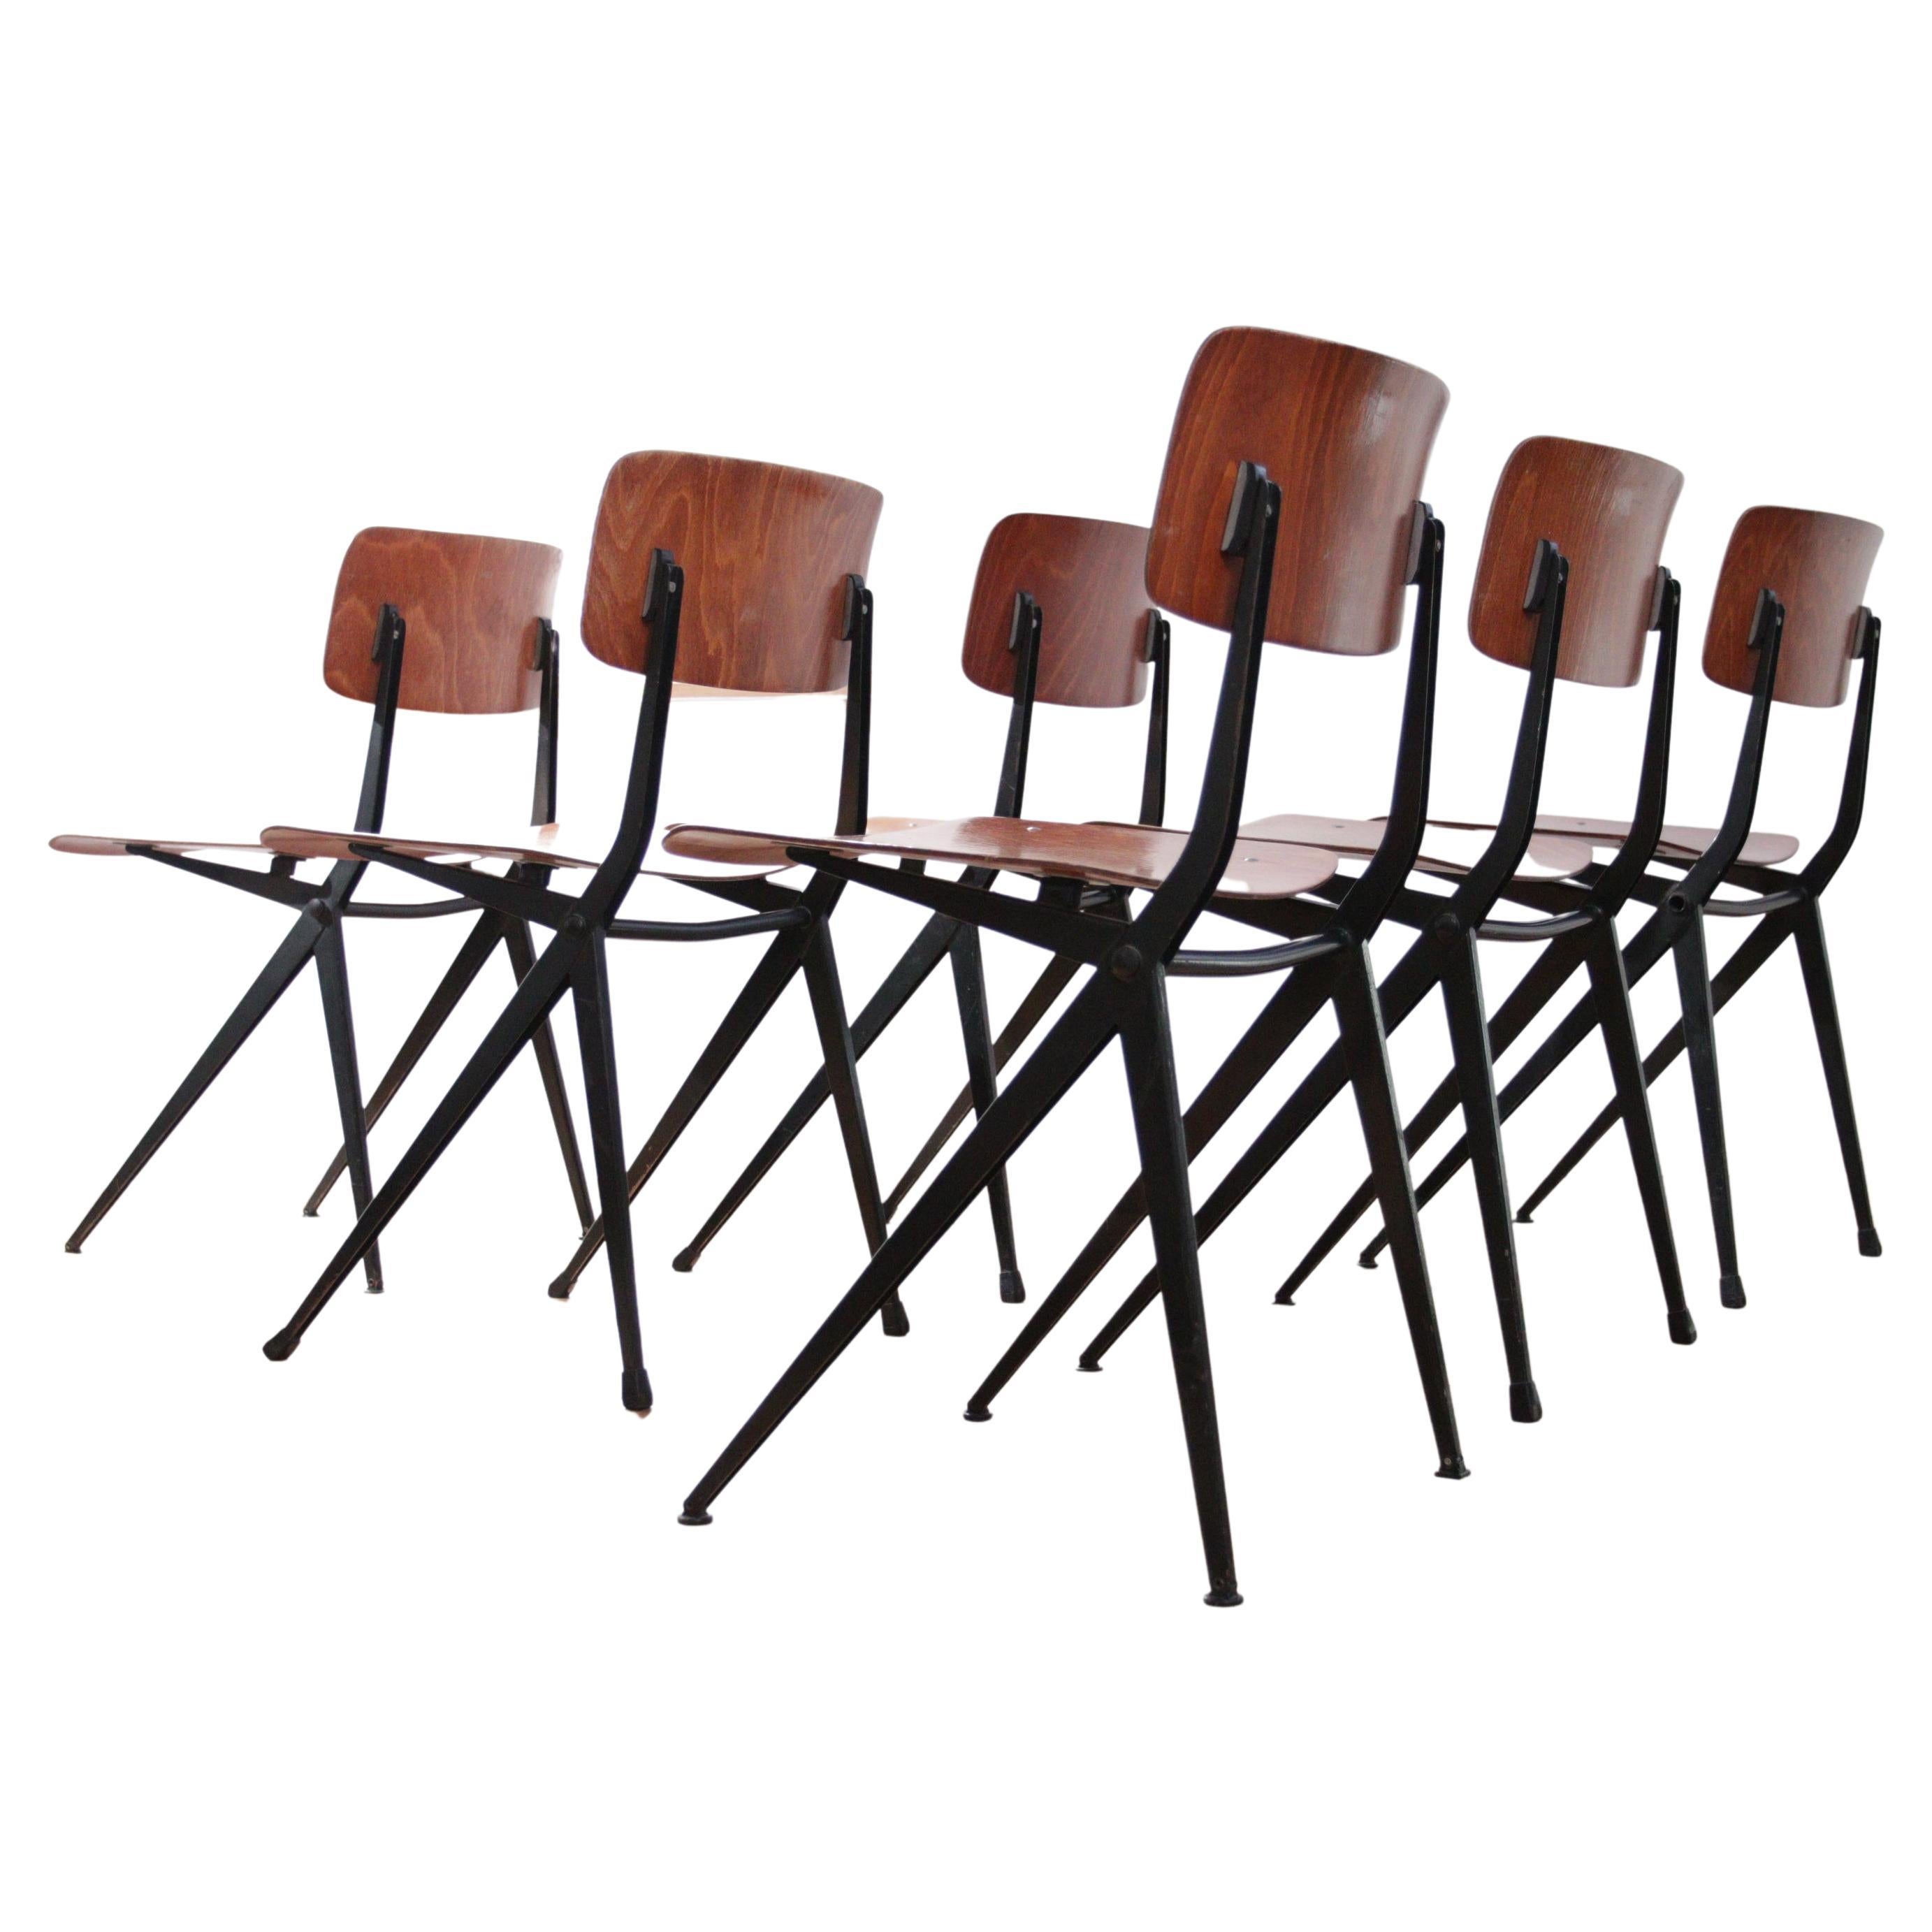 Marko S201 Ynske Kooistra Dining Room Chairs